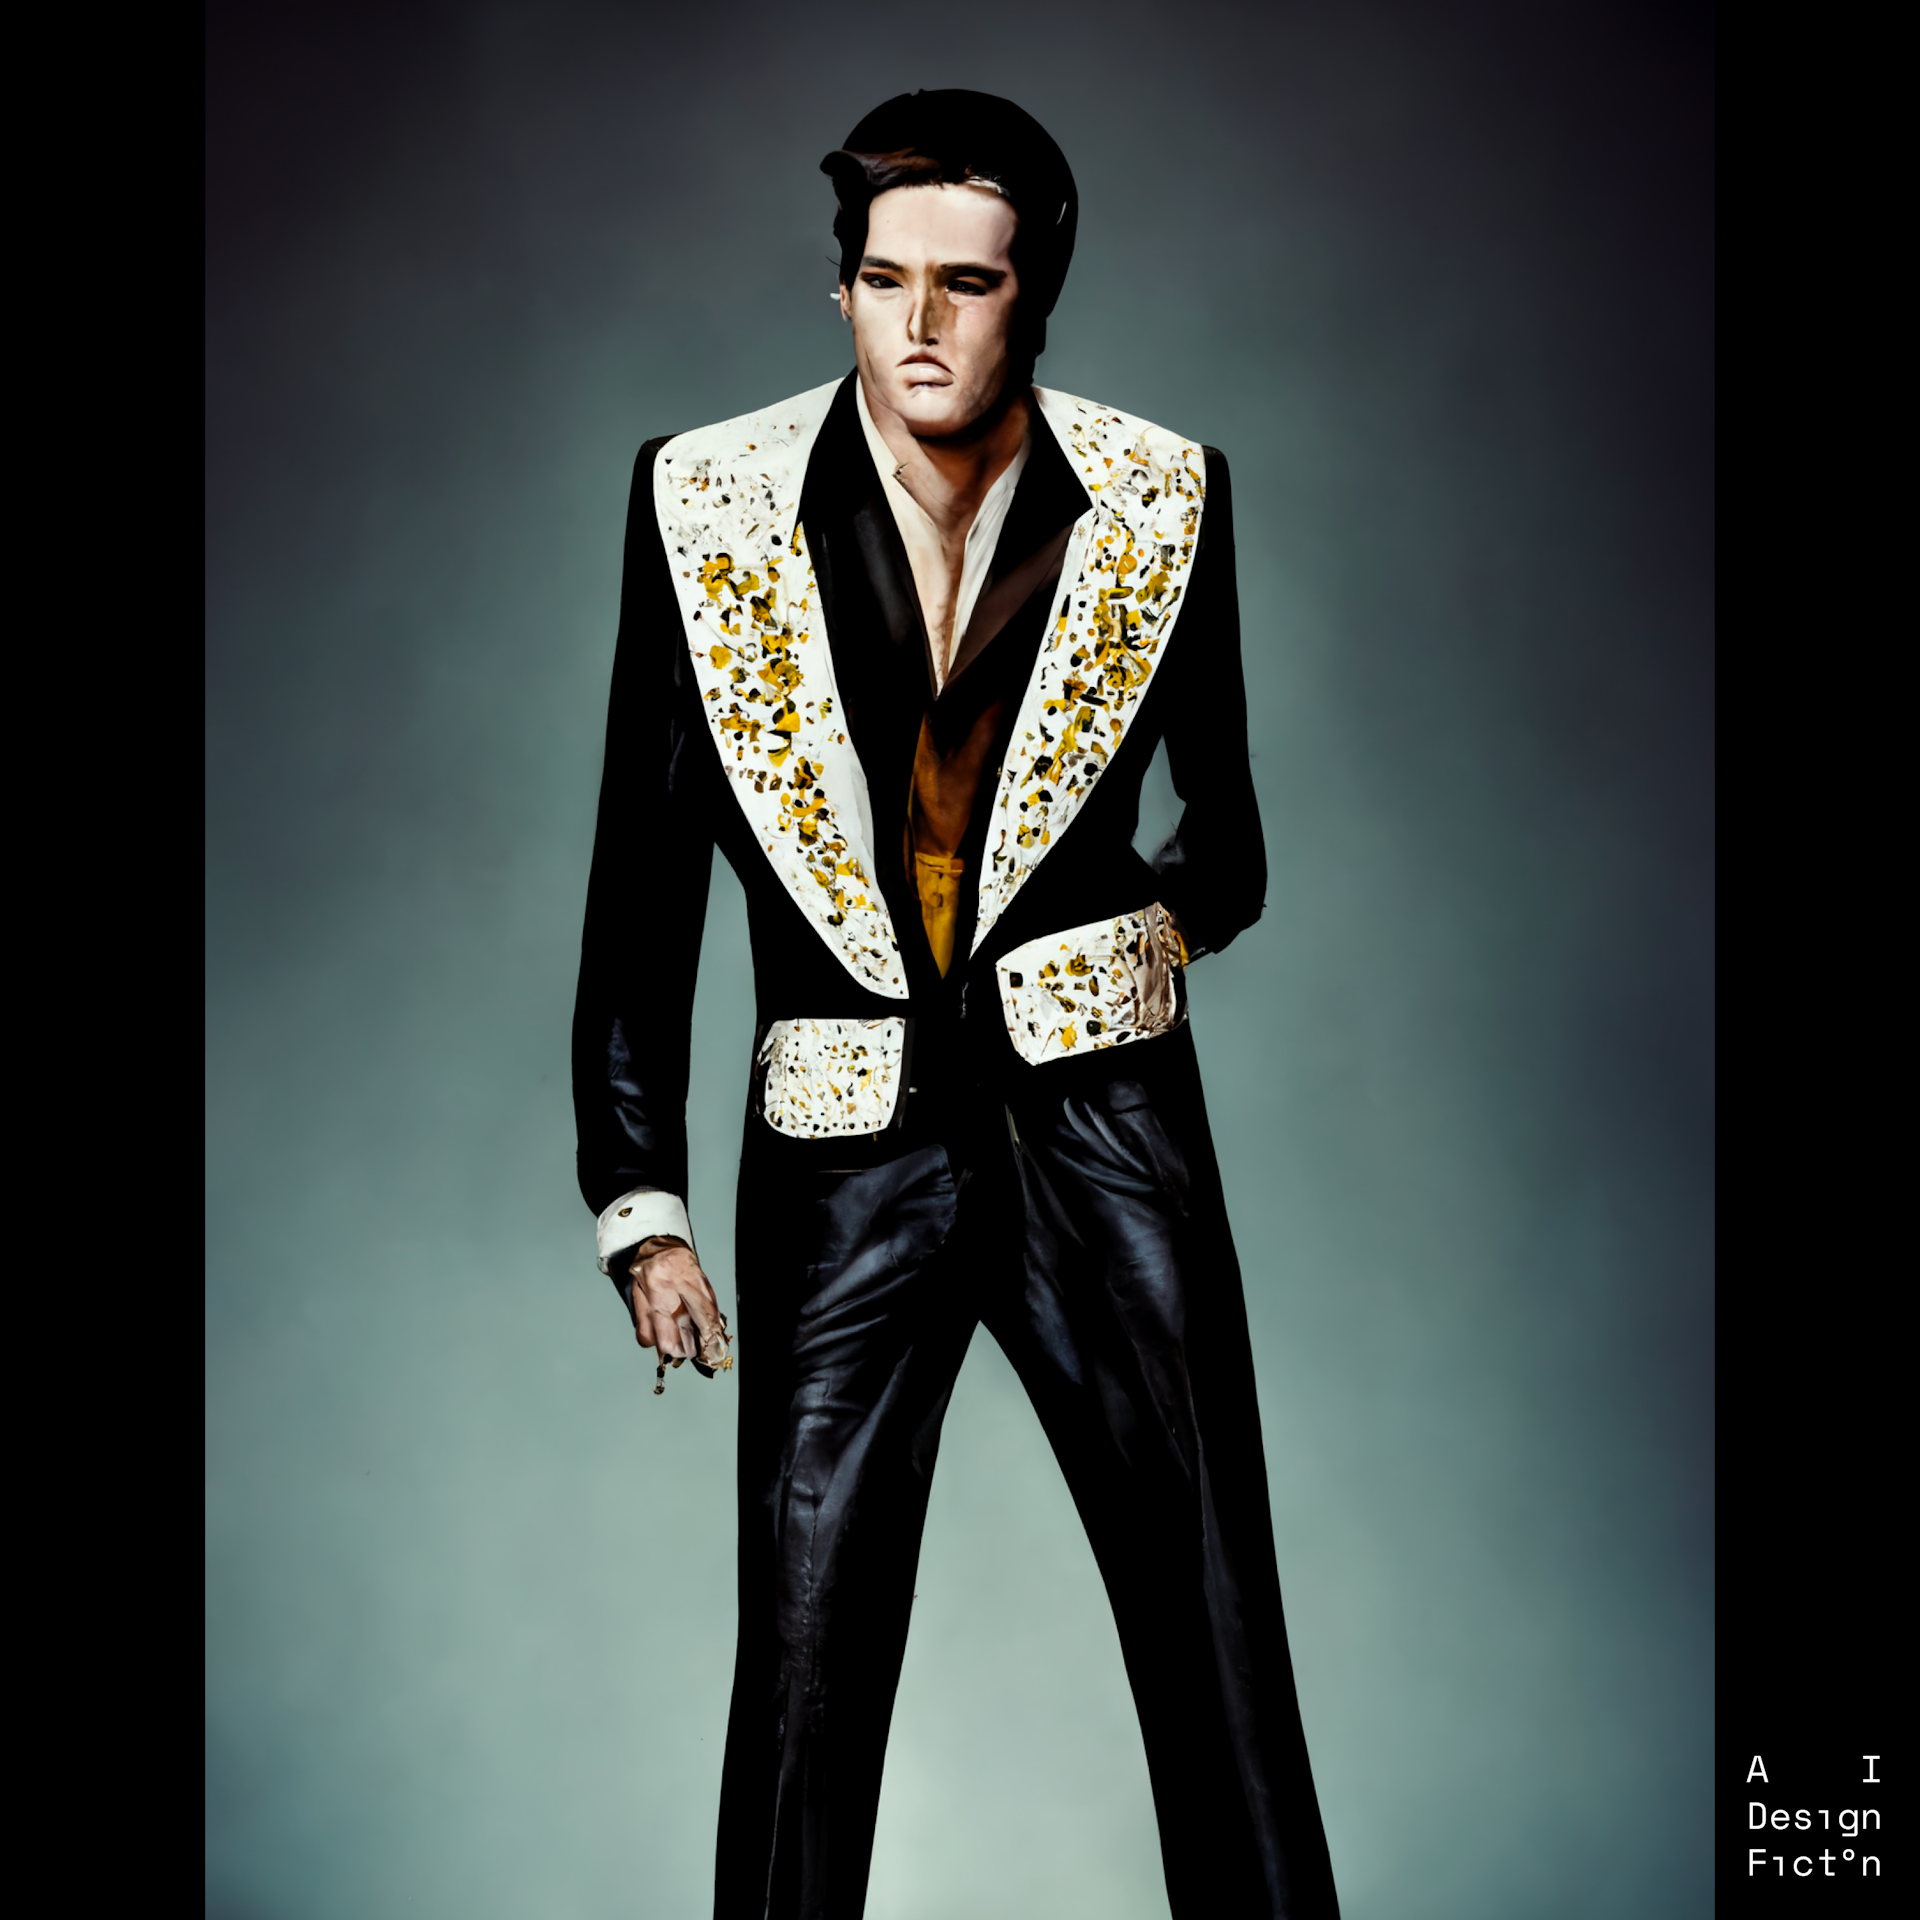 "Elvis wearing Tom Ford"